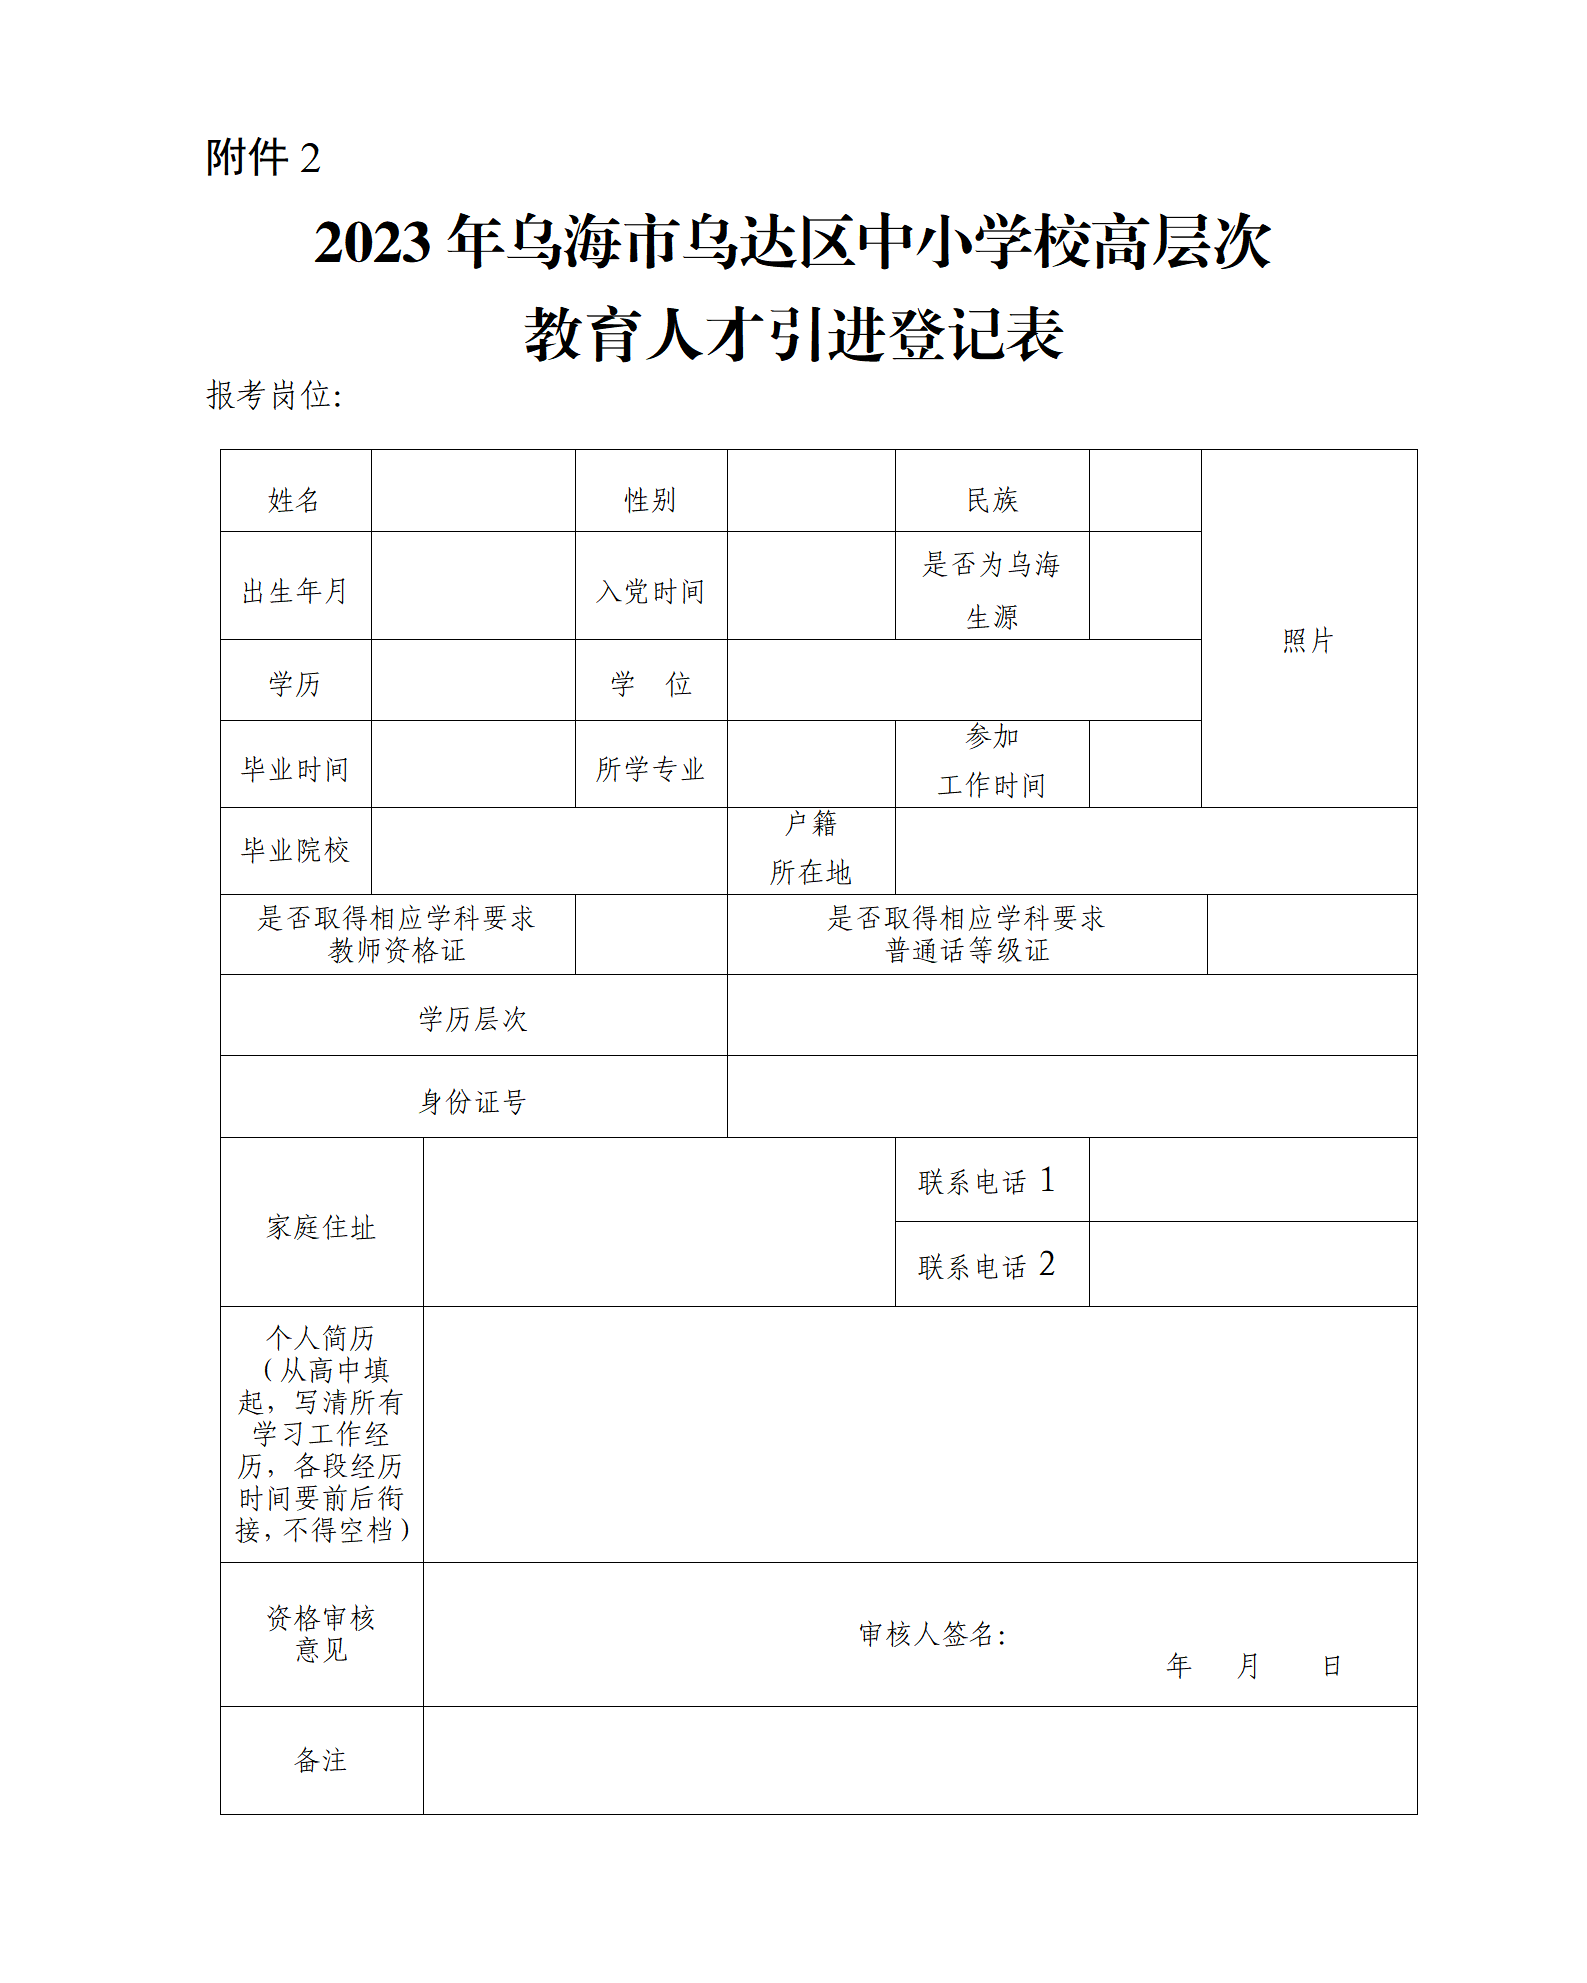 附件2：2023年乌海市乌达区中小学校高层次教育人才引进登记表.png